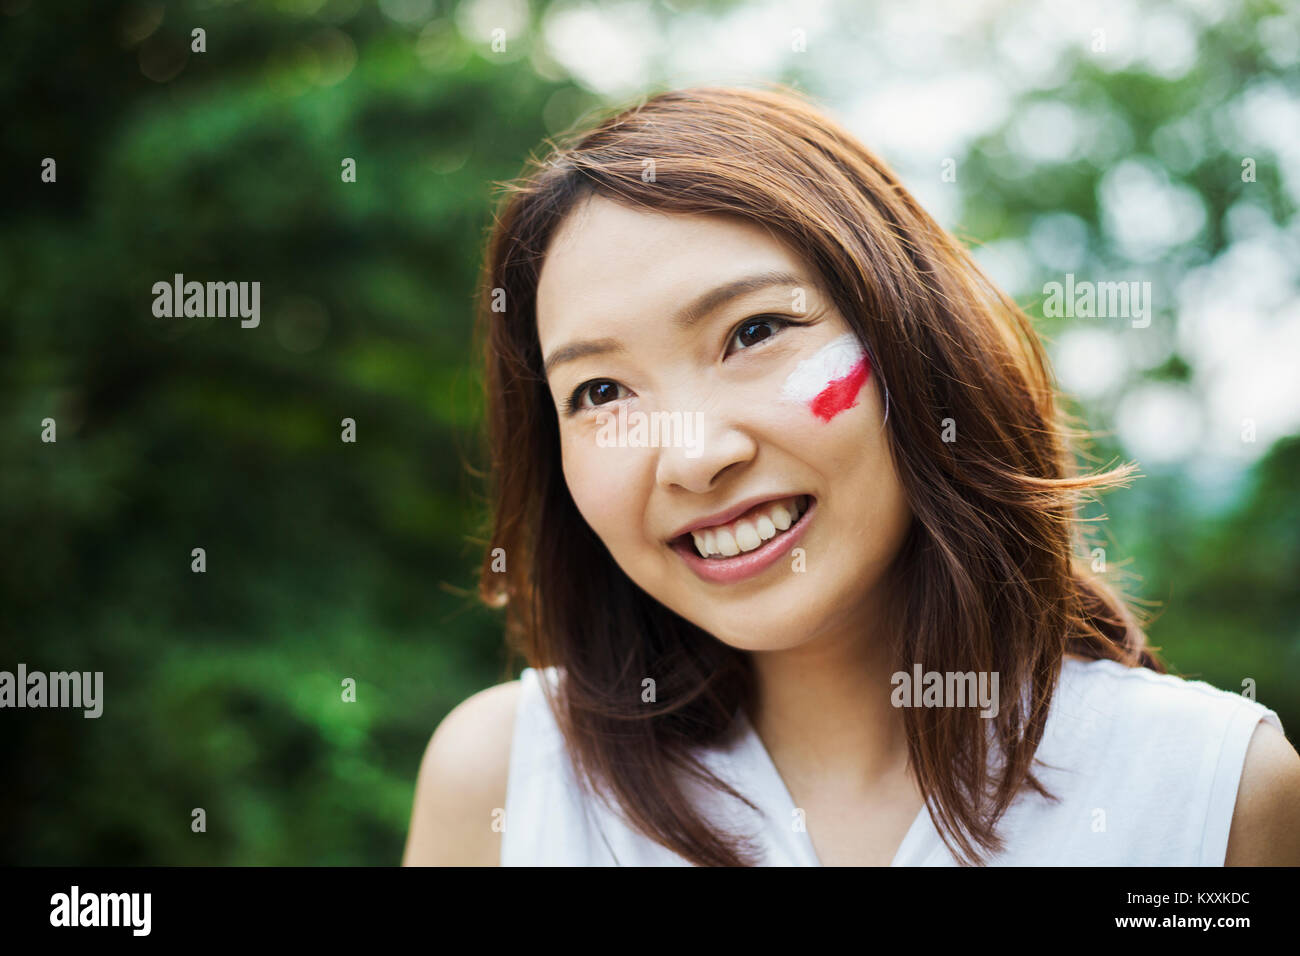 Ritratto di giovane donna con capelli castani, bandiera giapponese dipinta sulla sua guancia, sorridente alla fotocamera. Foto Stock